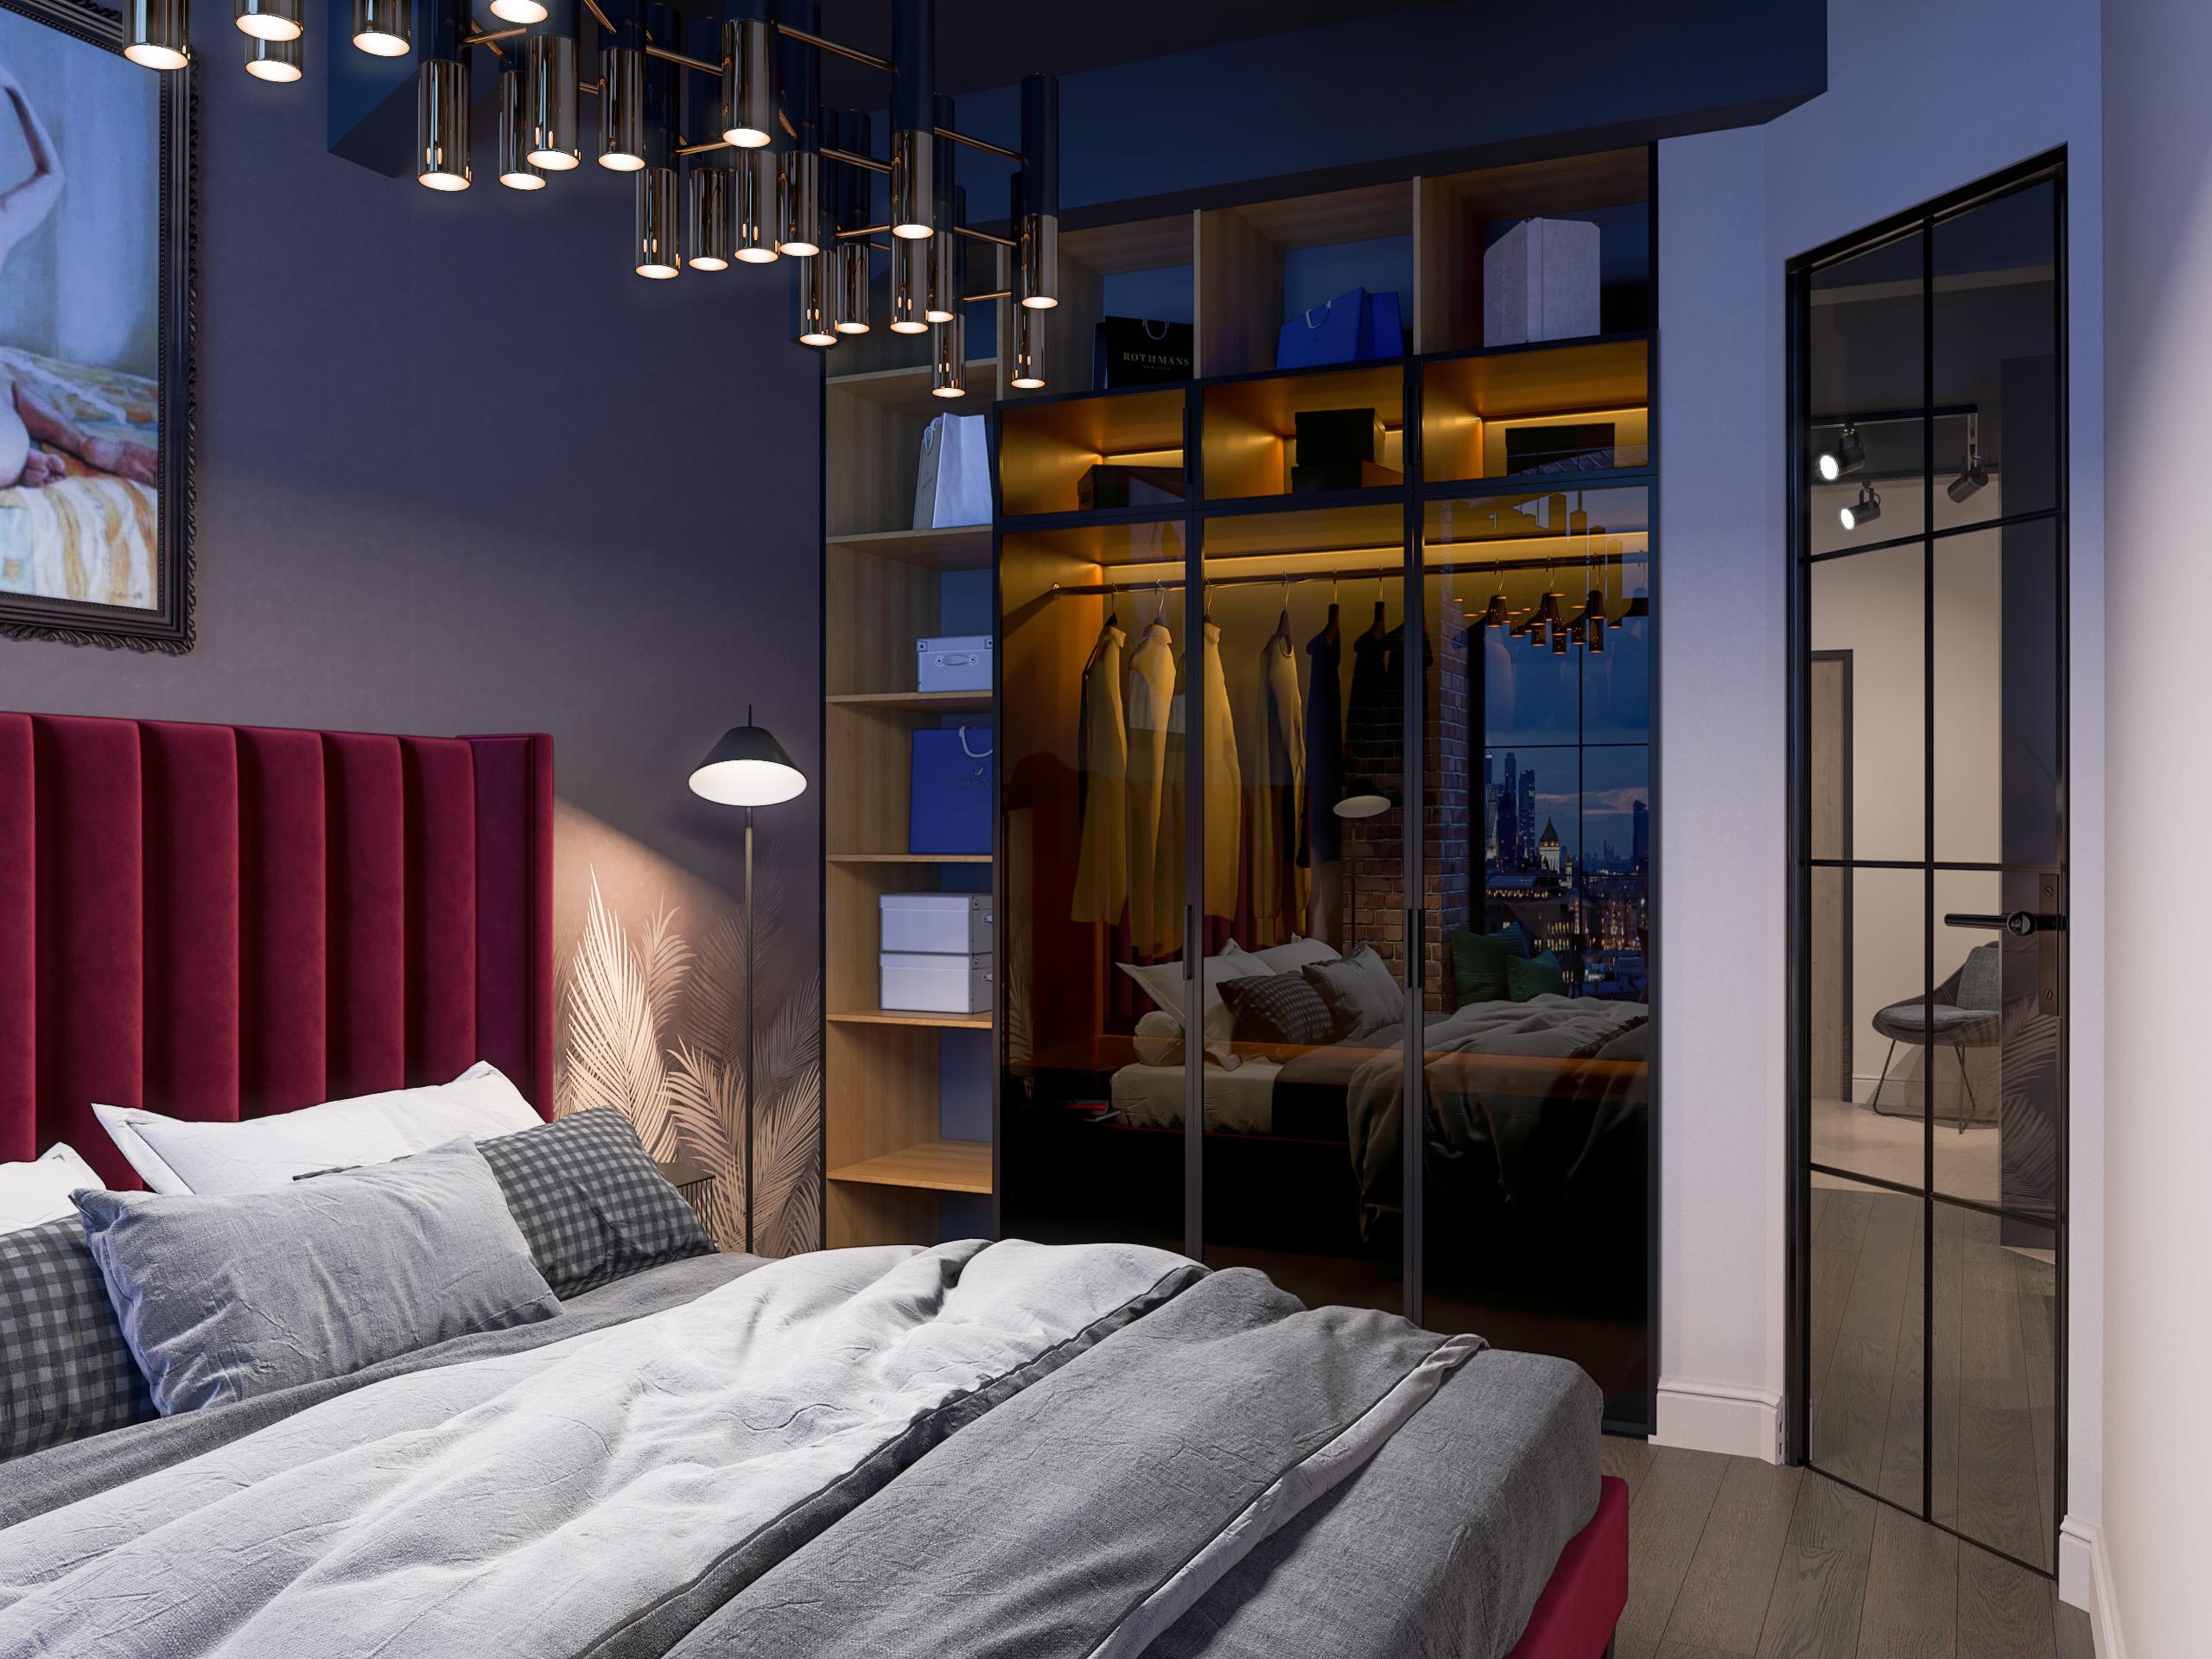 Интерьер спальни с подсветкой светодиодной и светильниками над кроватью